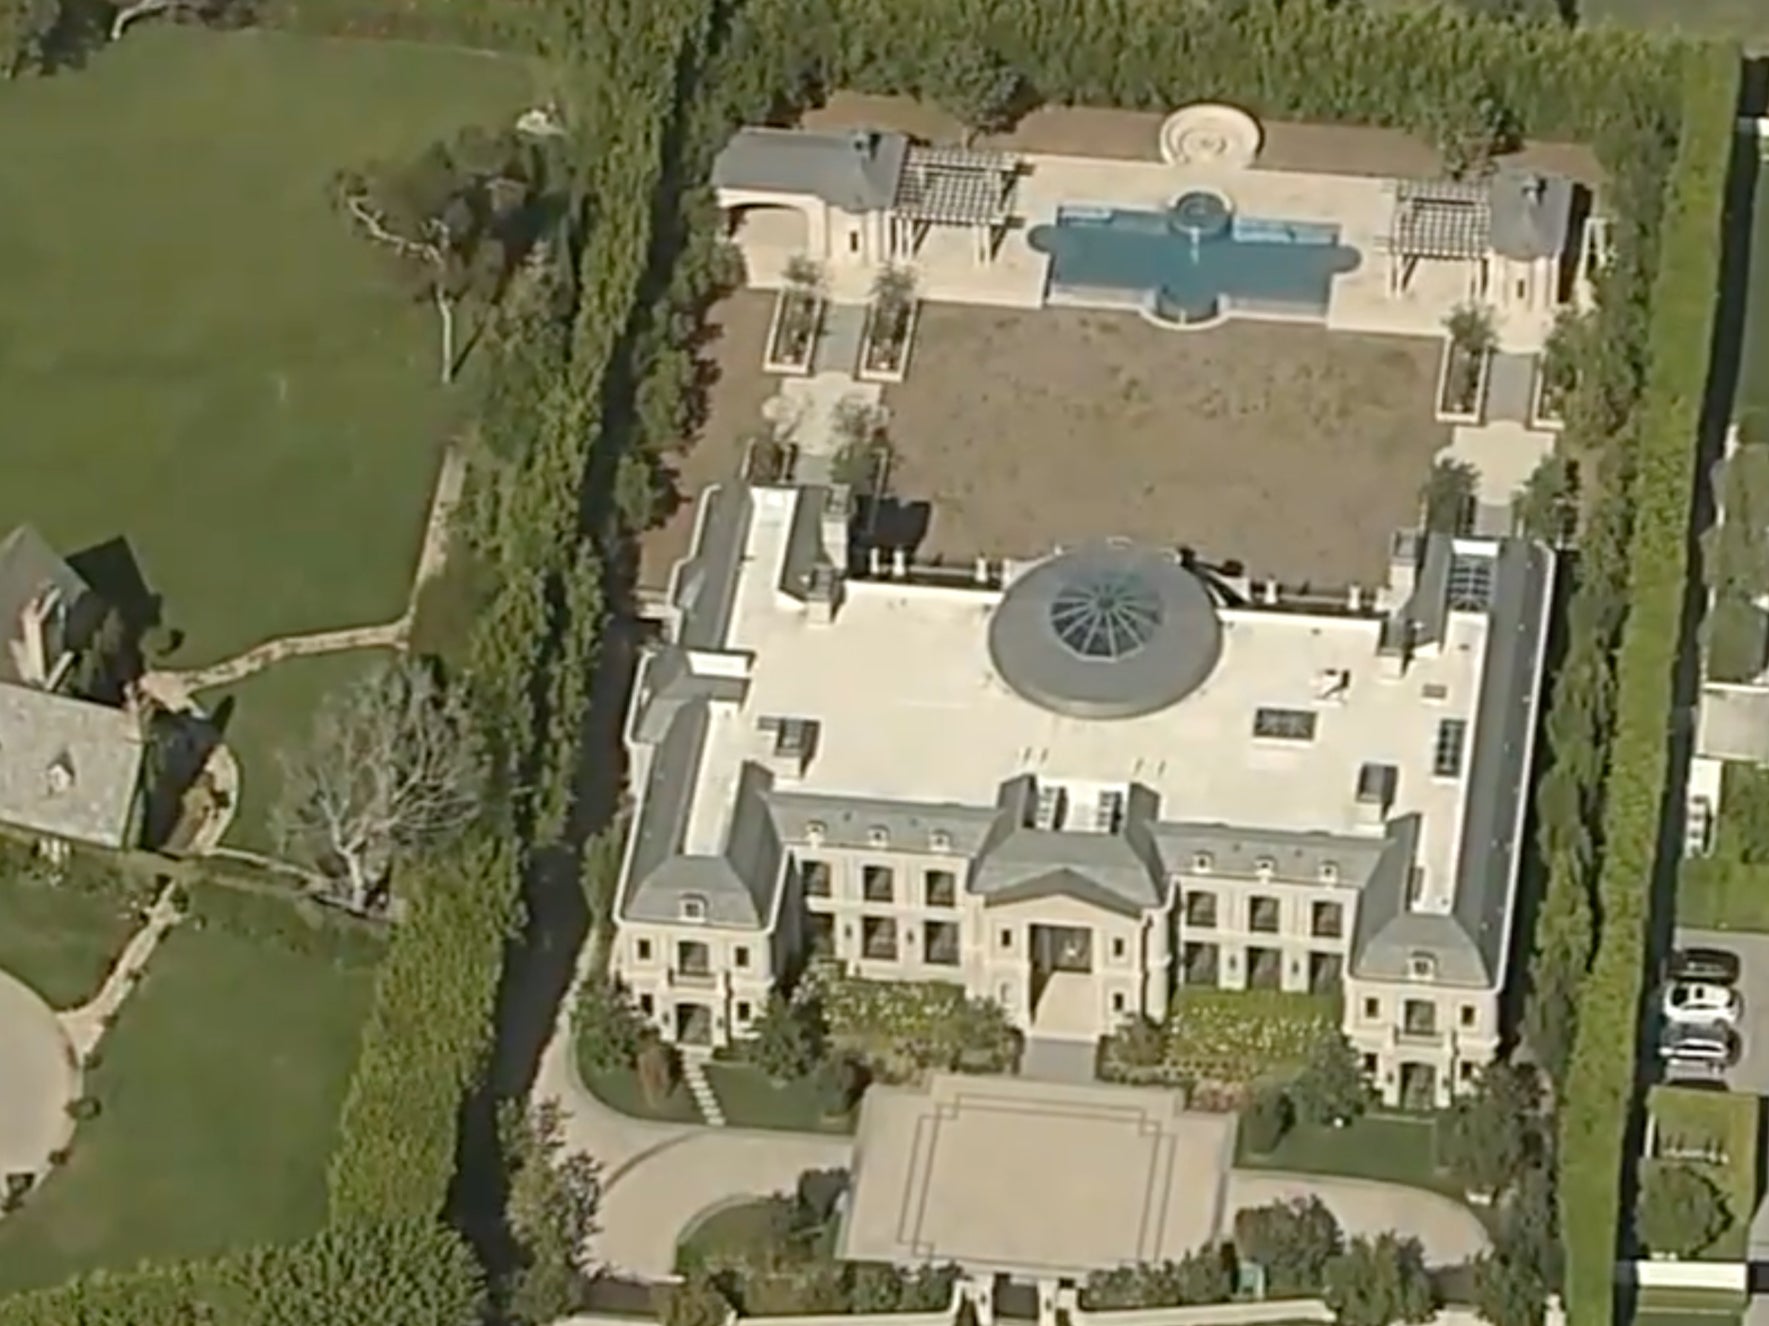 La mansión está situada en la zona de Holmby Hills de Los Ángeles